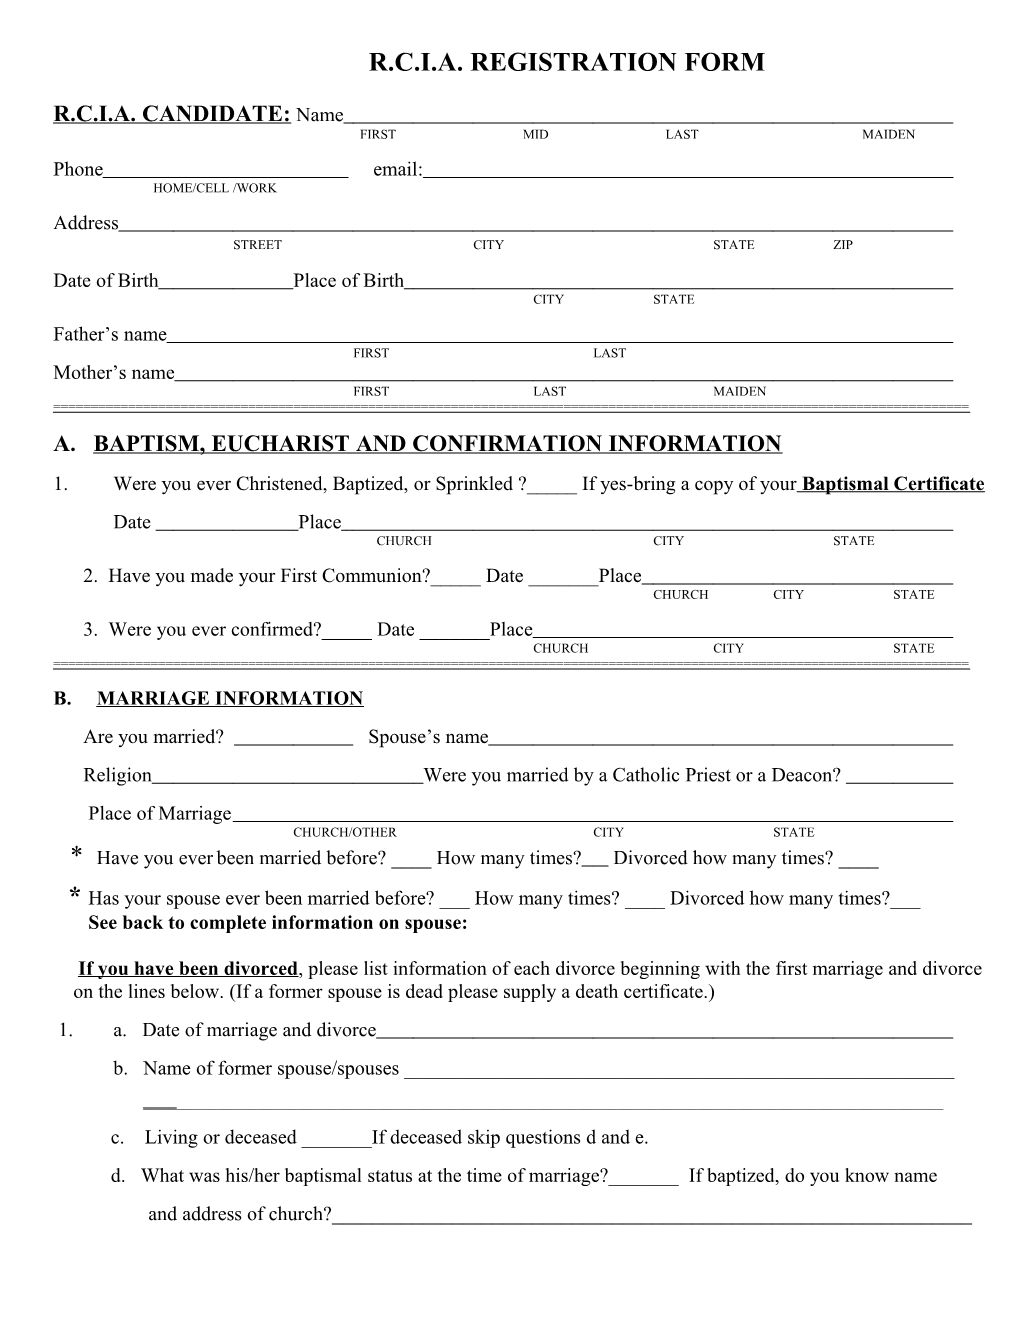 R.C.I.A. Registration Form